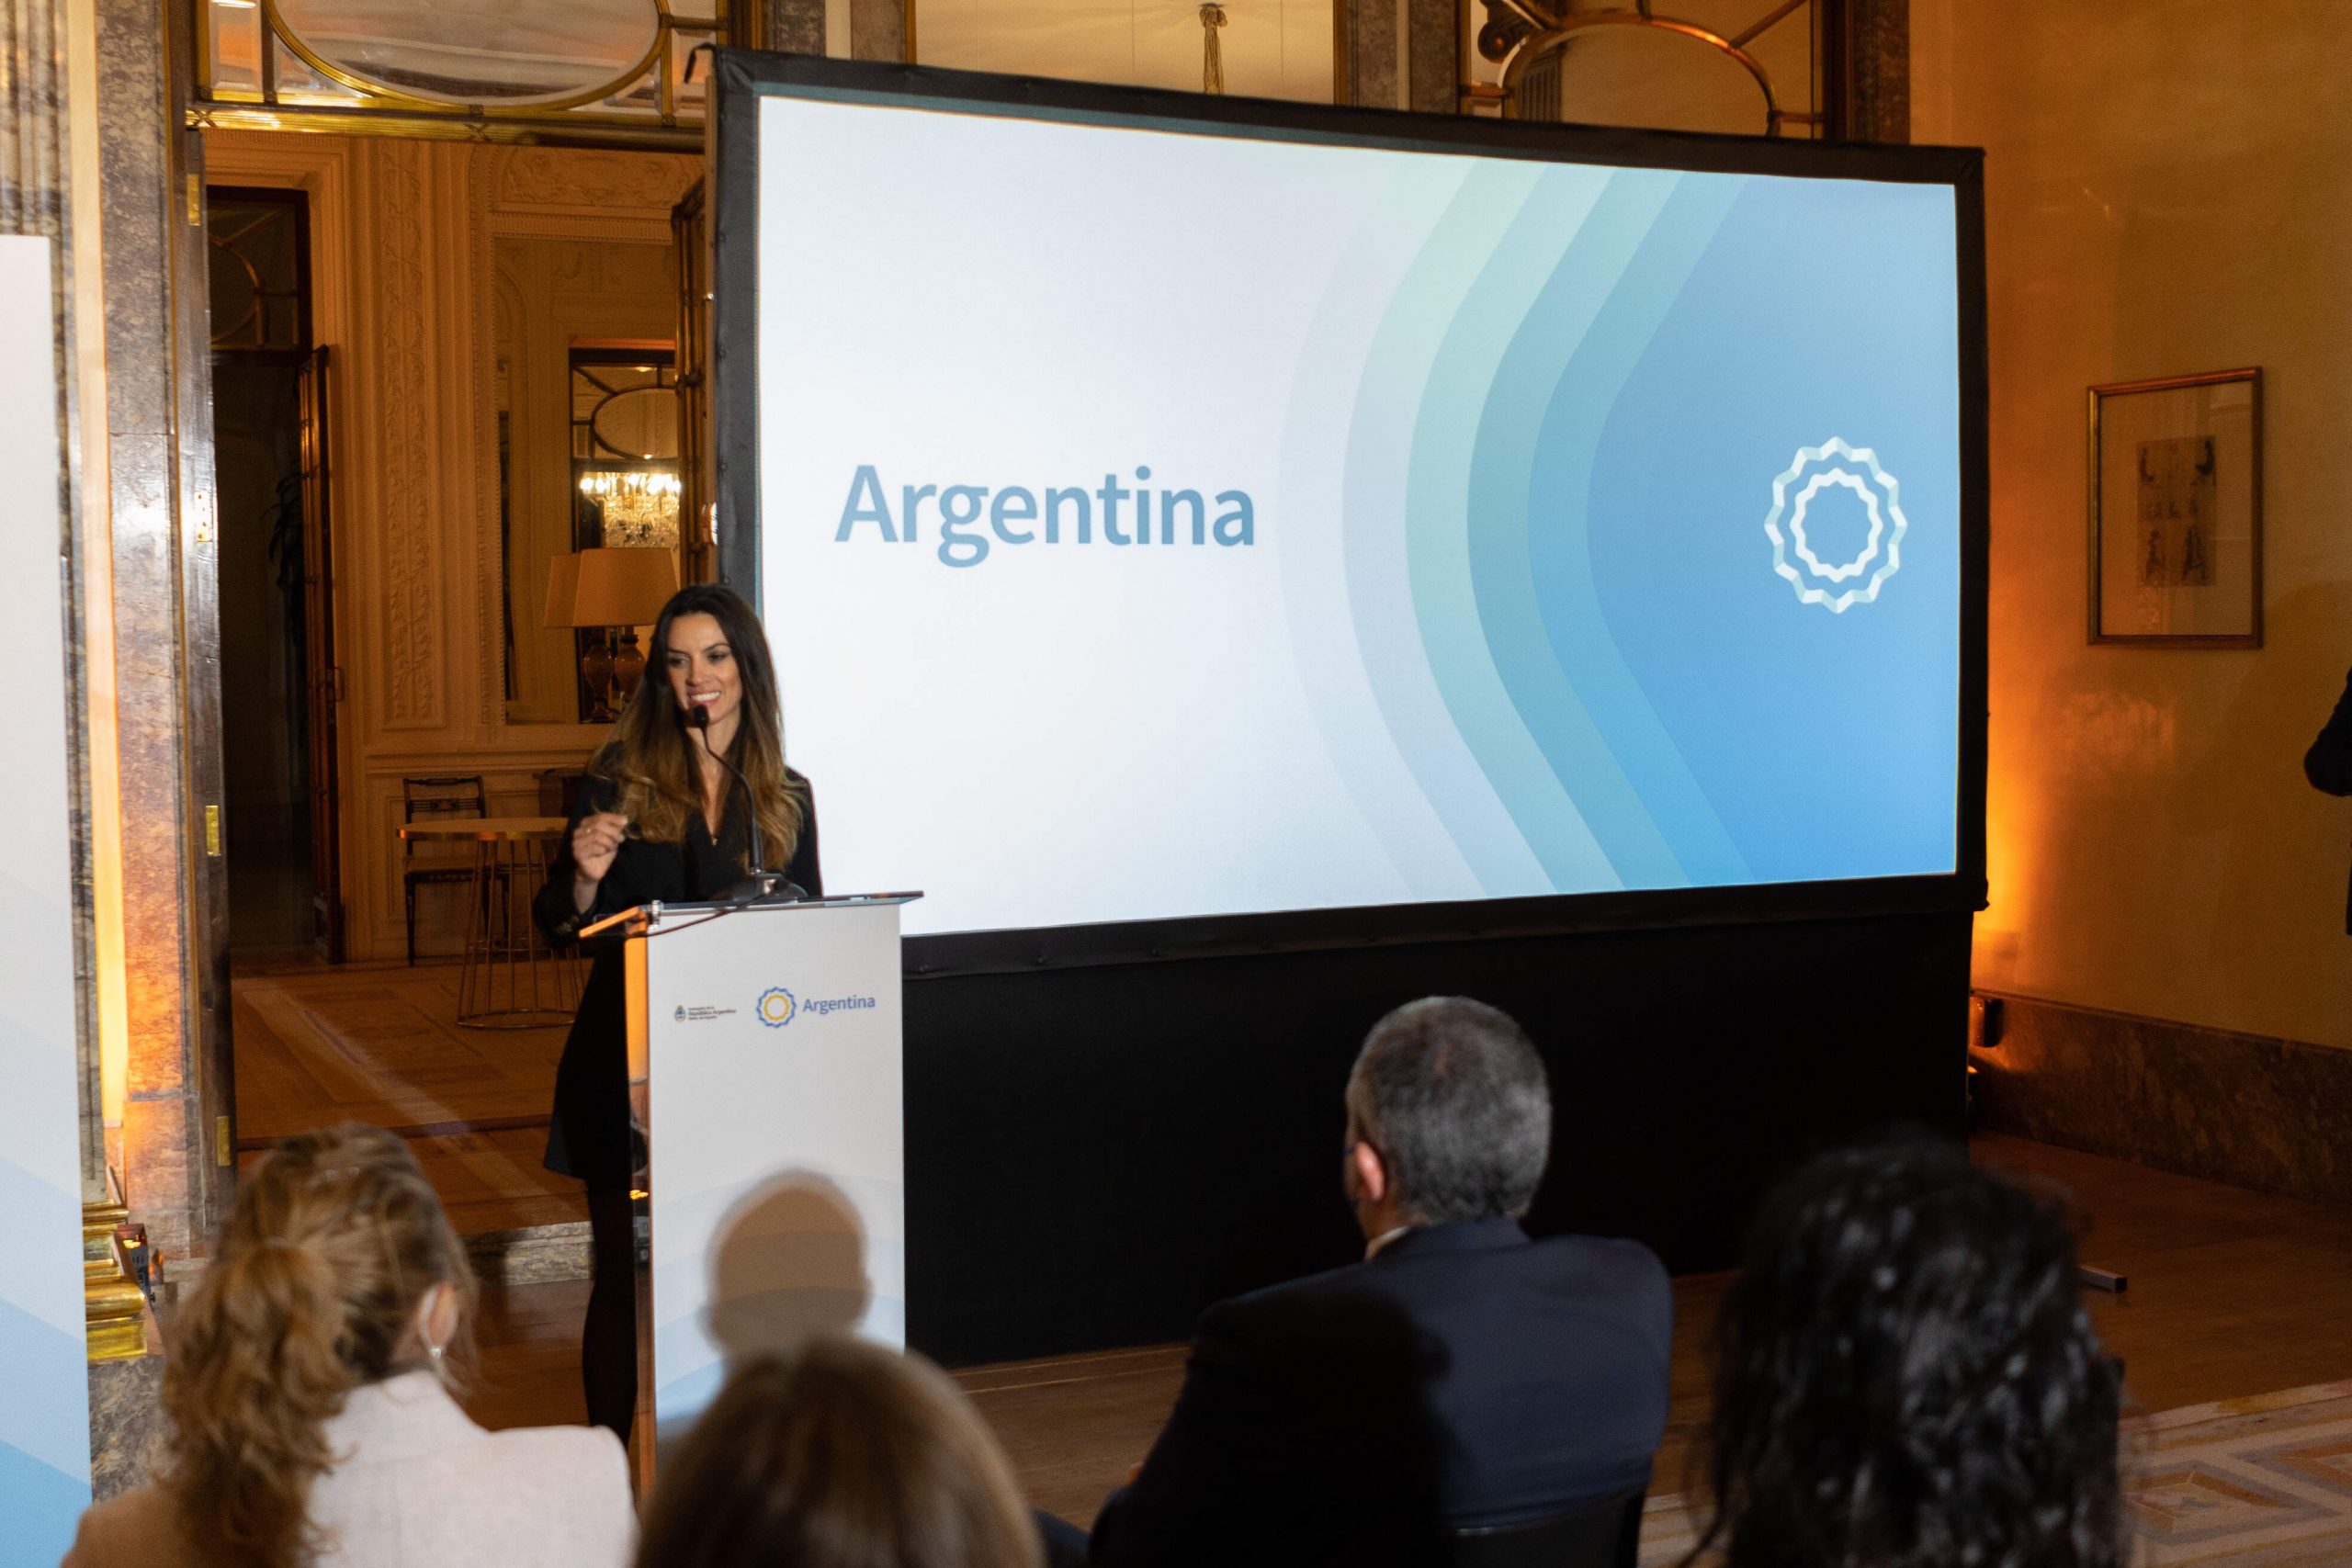 Argentina presentó su Marca País en Madrid